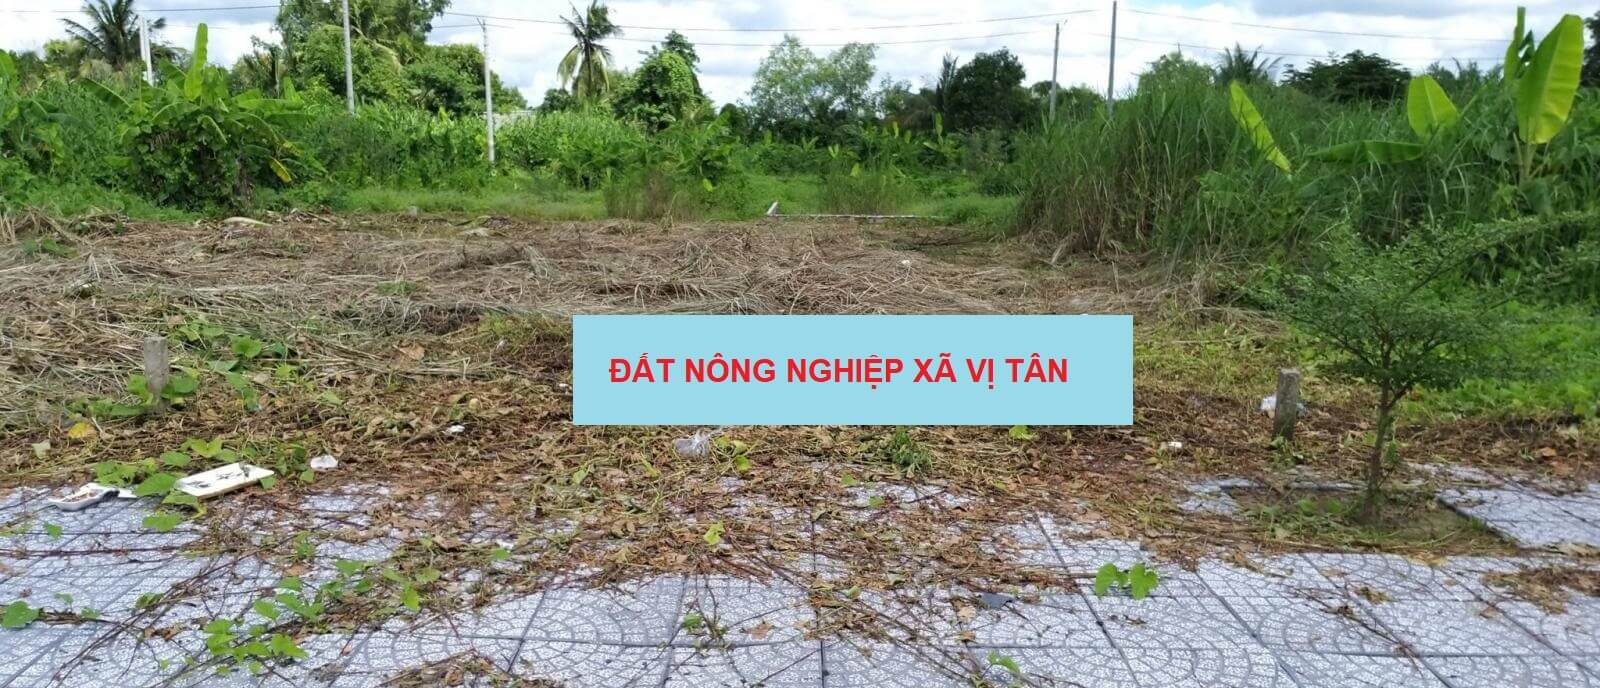 Bán đất tại xã Vị Tân, Hậu Giang 2